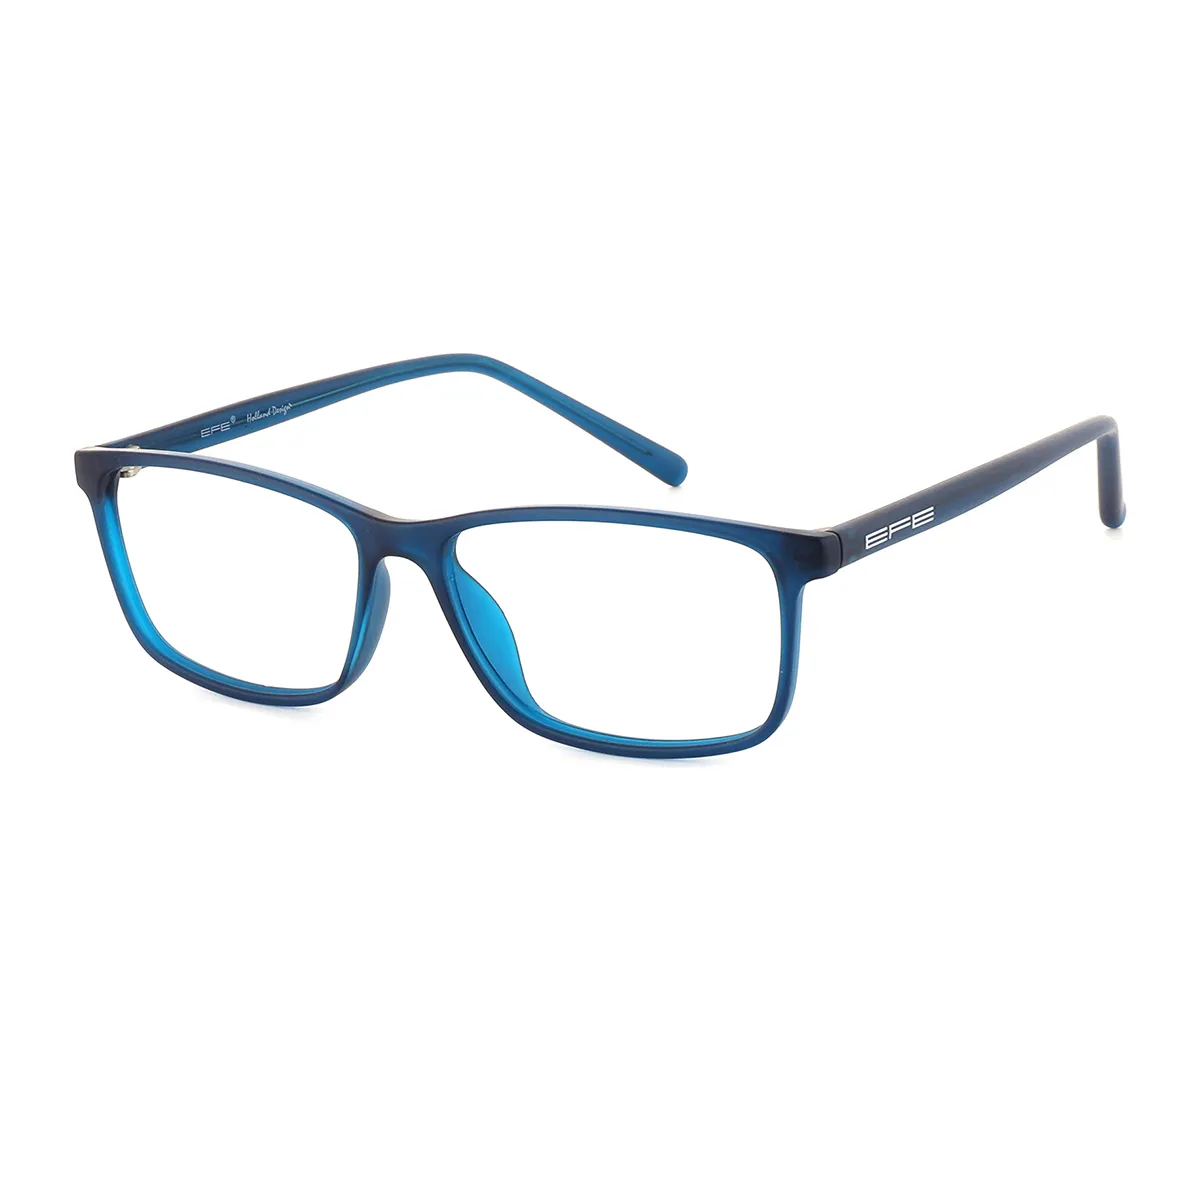 Grier - Rectangle Blue Glasses for Men & Women